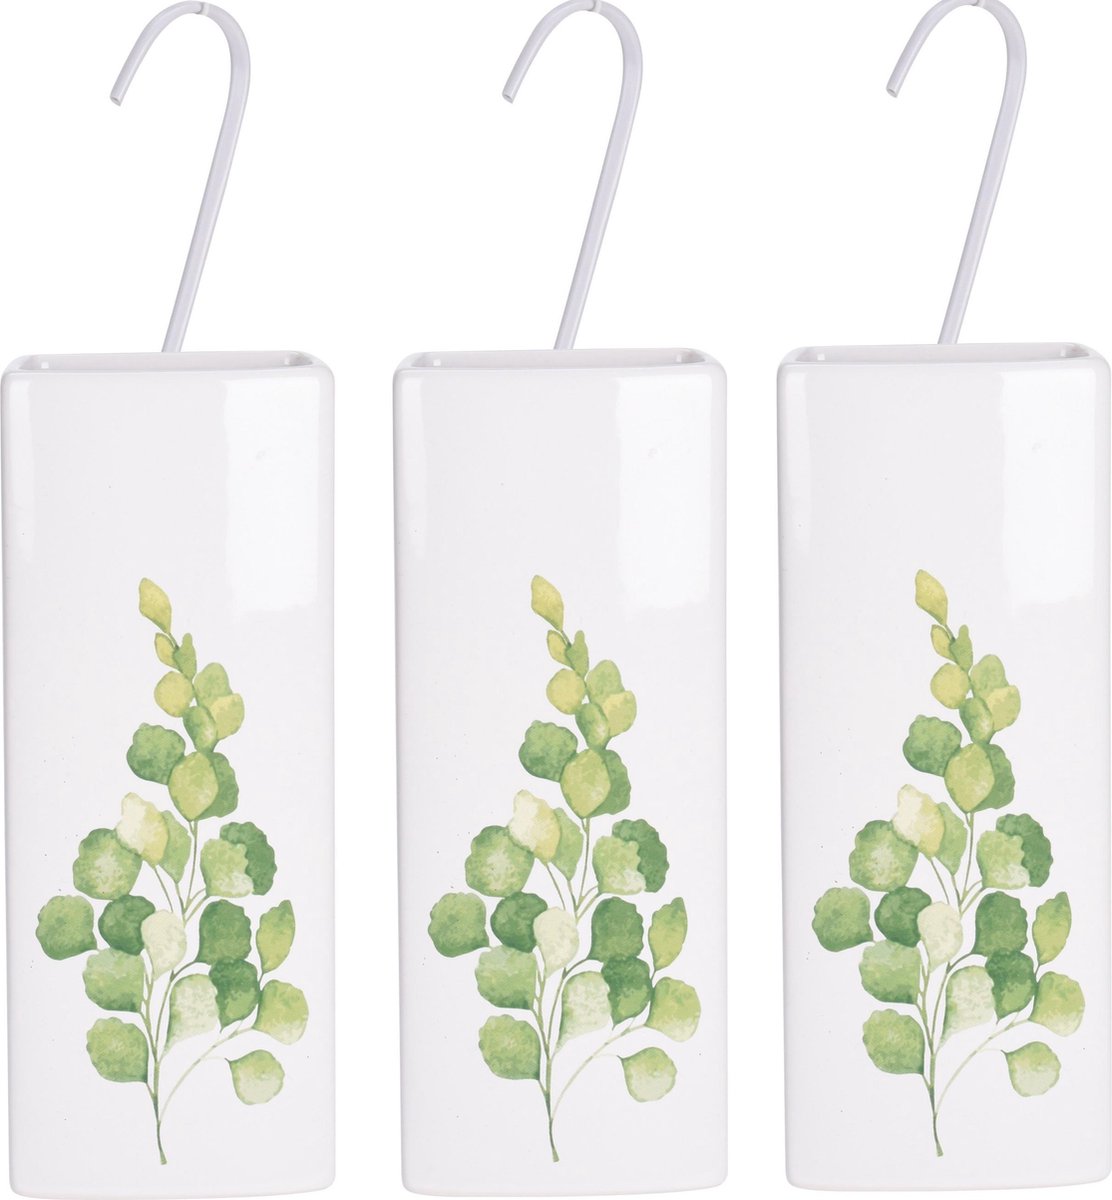 6x Witte radiator waterverdampers/luchtbevochtigers botanische planten print eucalyptus blad 21 cm - Waterverdampers voor de verwarming